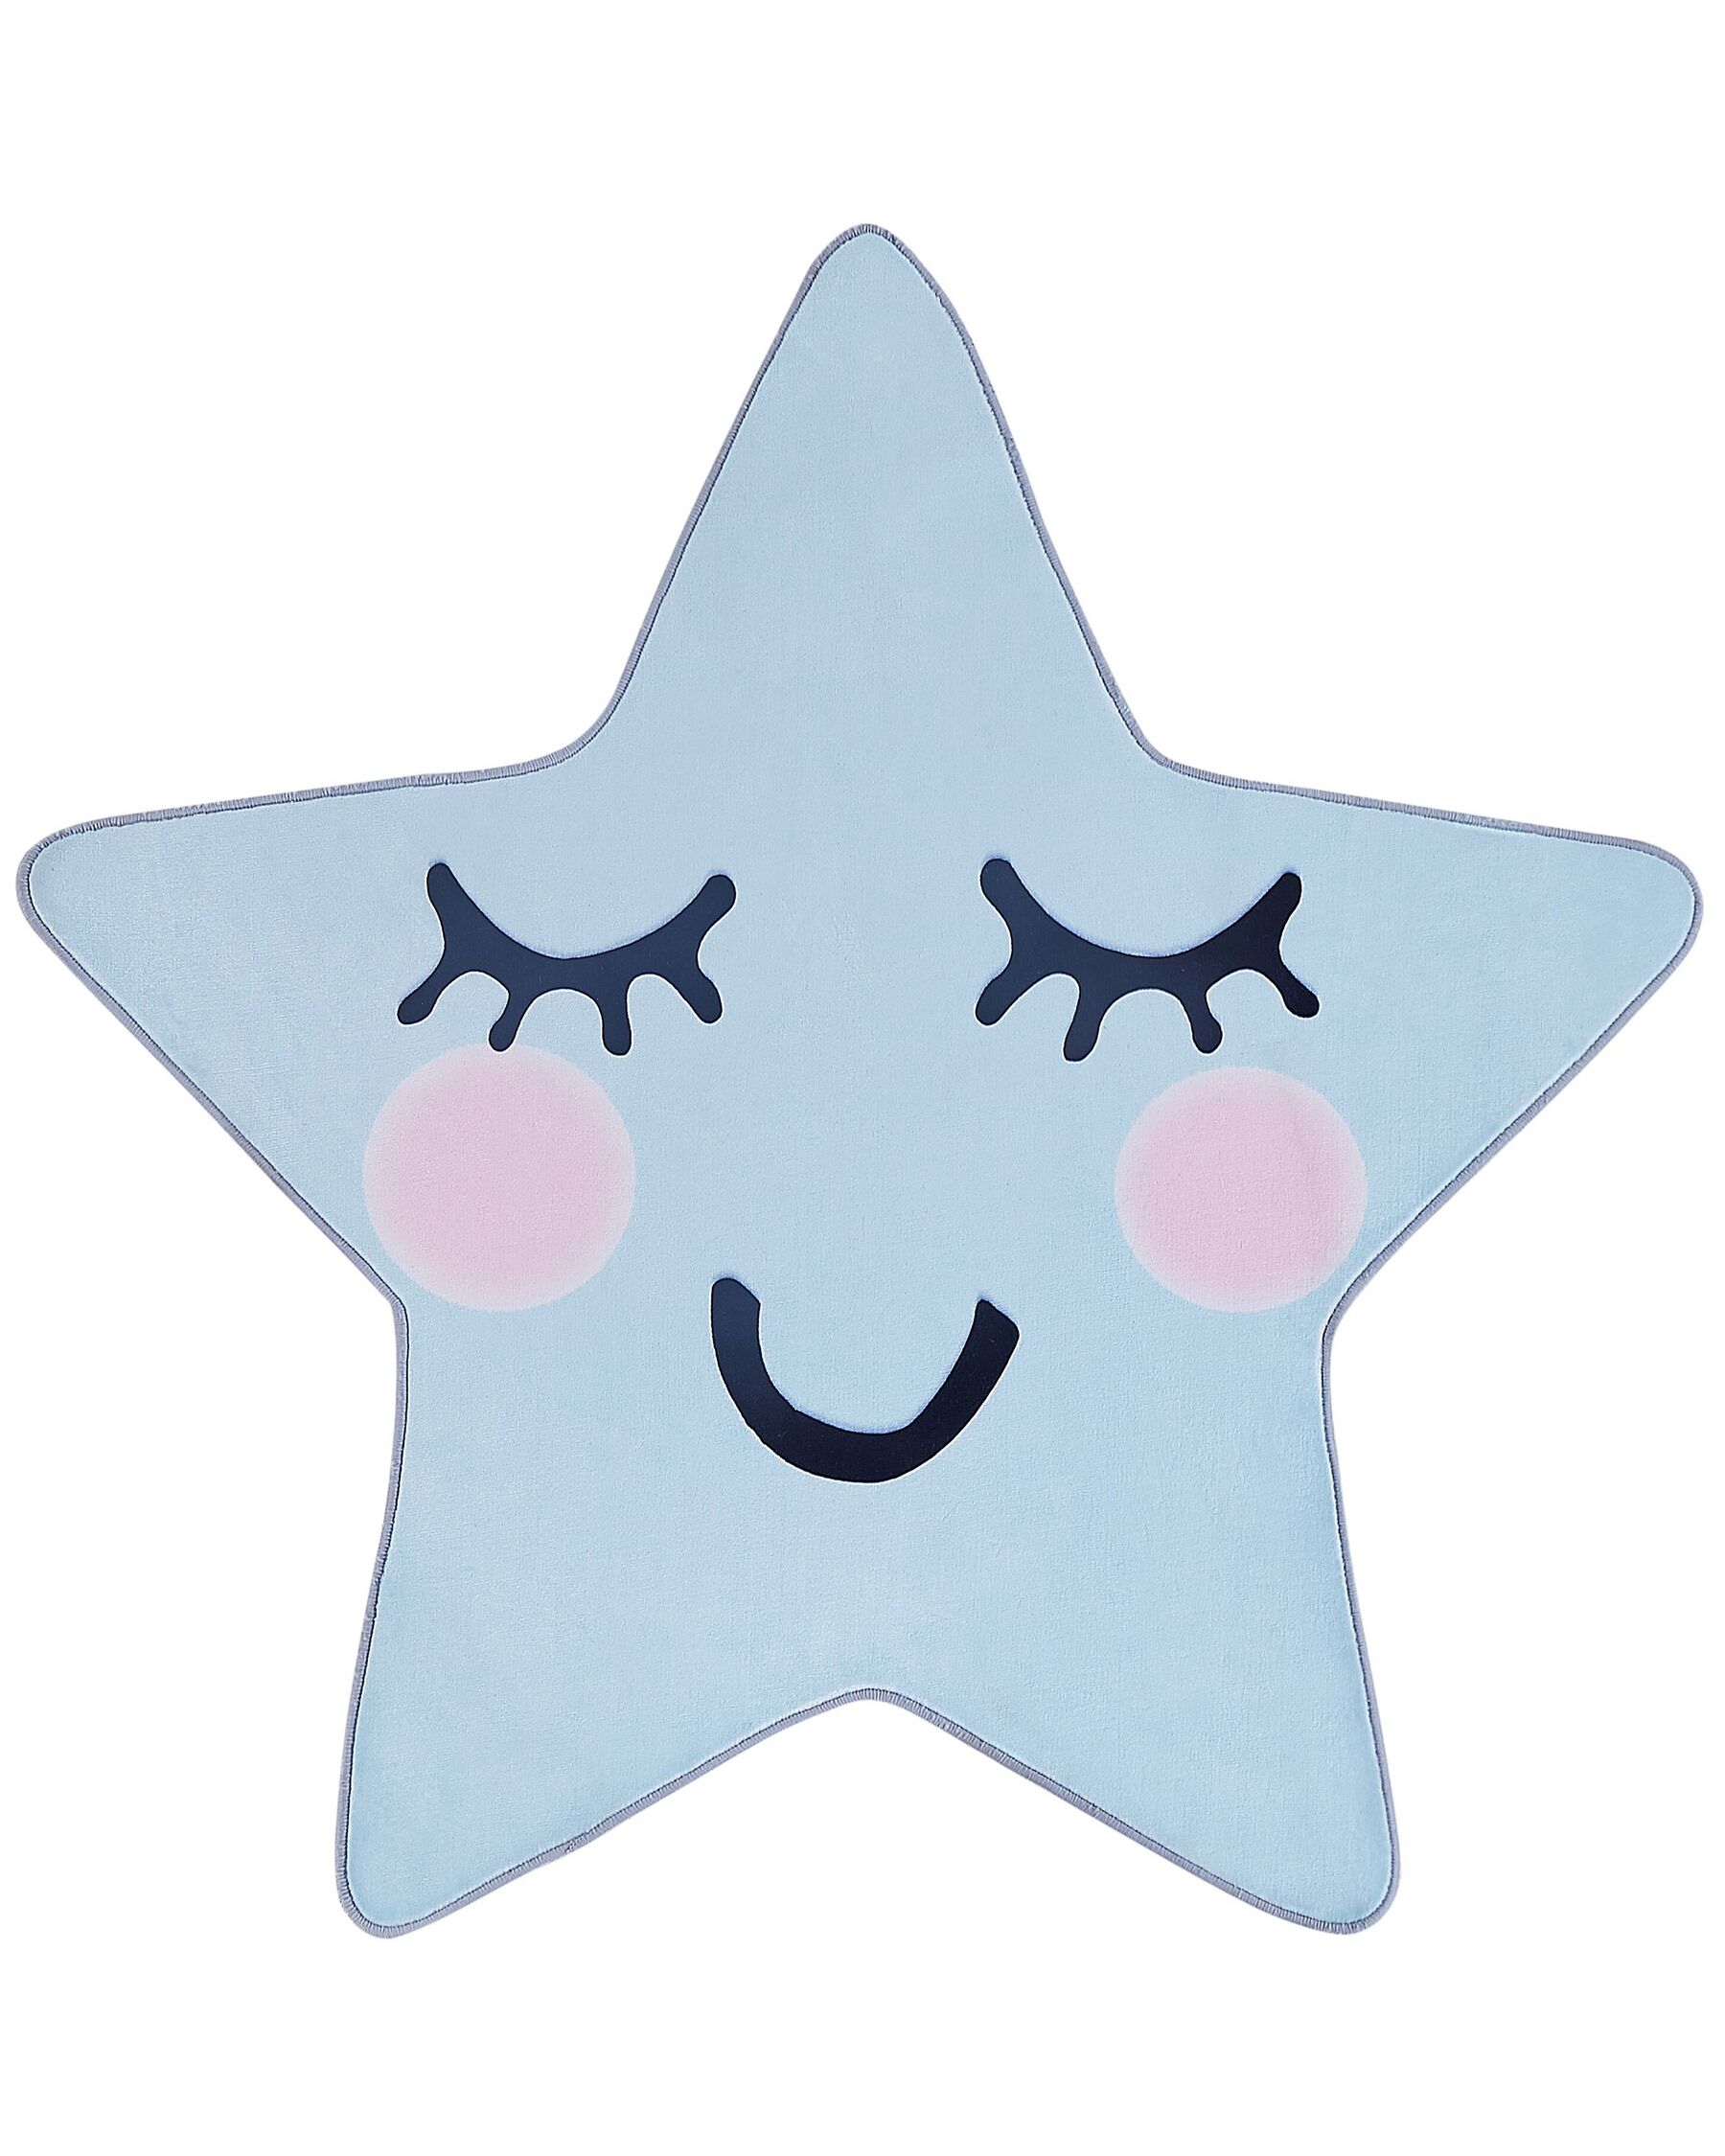 Dywan dziecięcy kształt gwiazdy 120 x 120 cm niebieski SIRIUS_831557